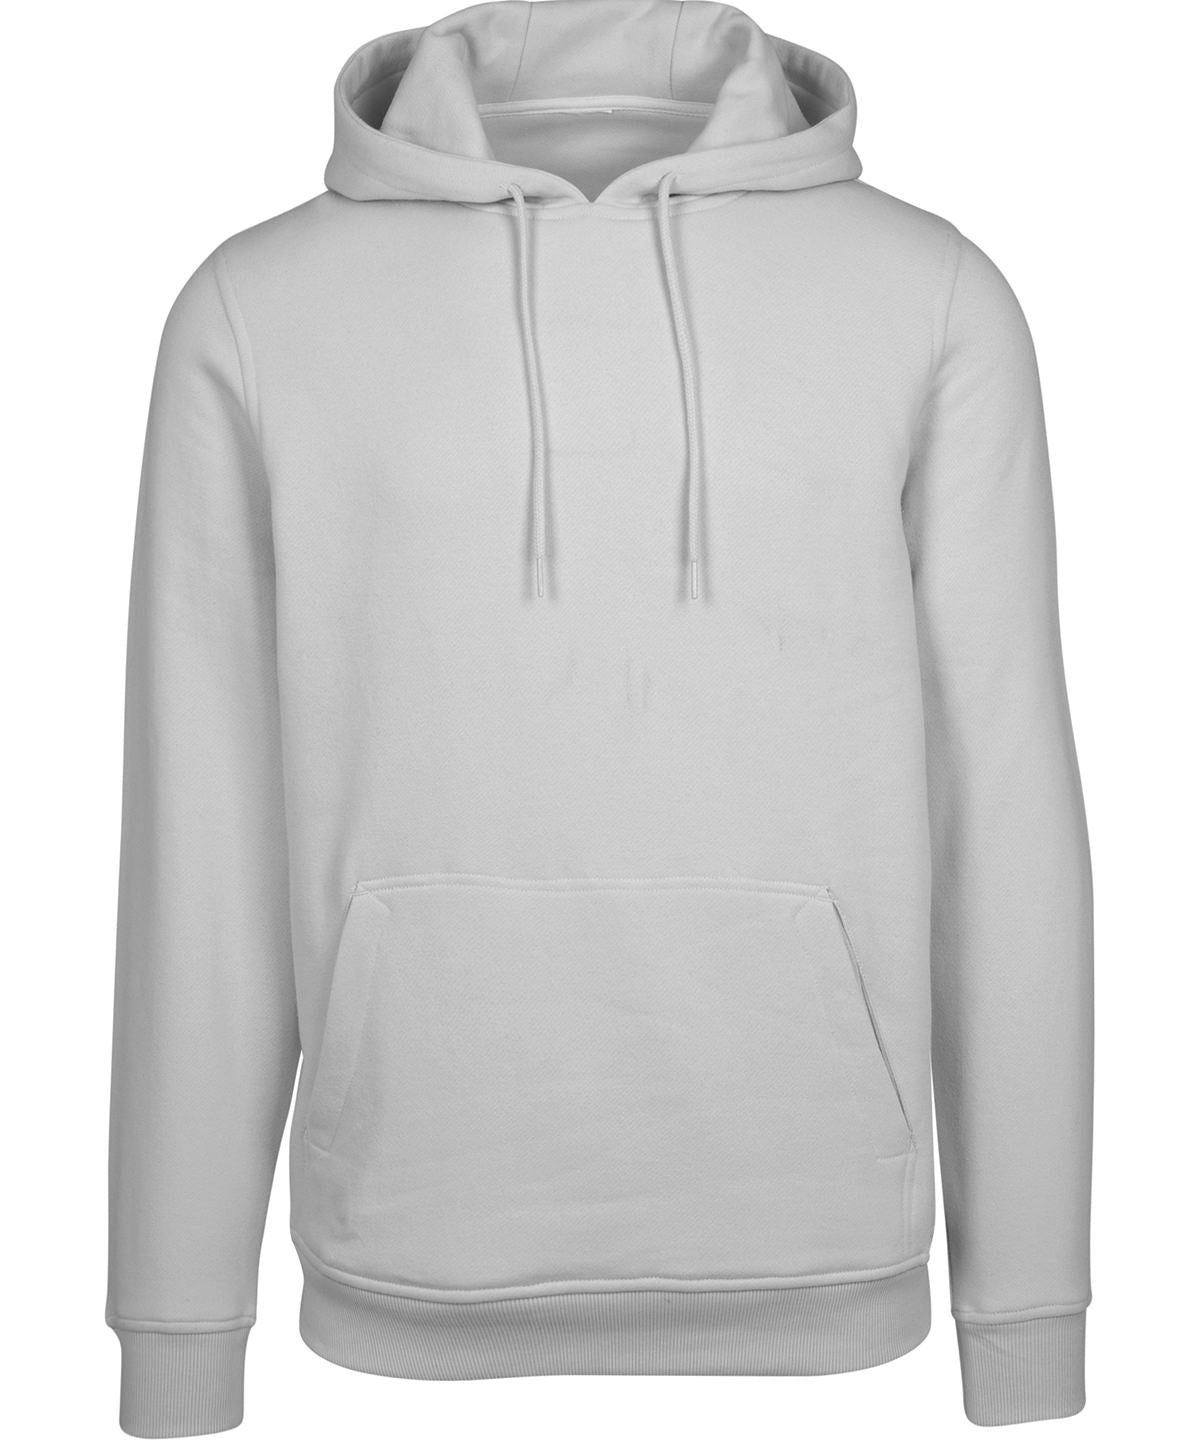 Personalised Hoodies - Black Build Your Brand Heavy hoodie